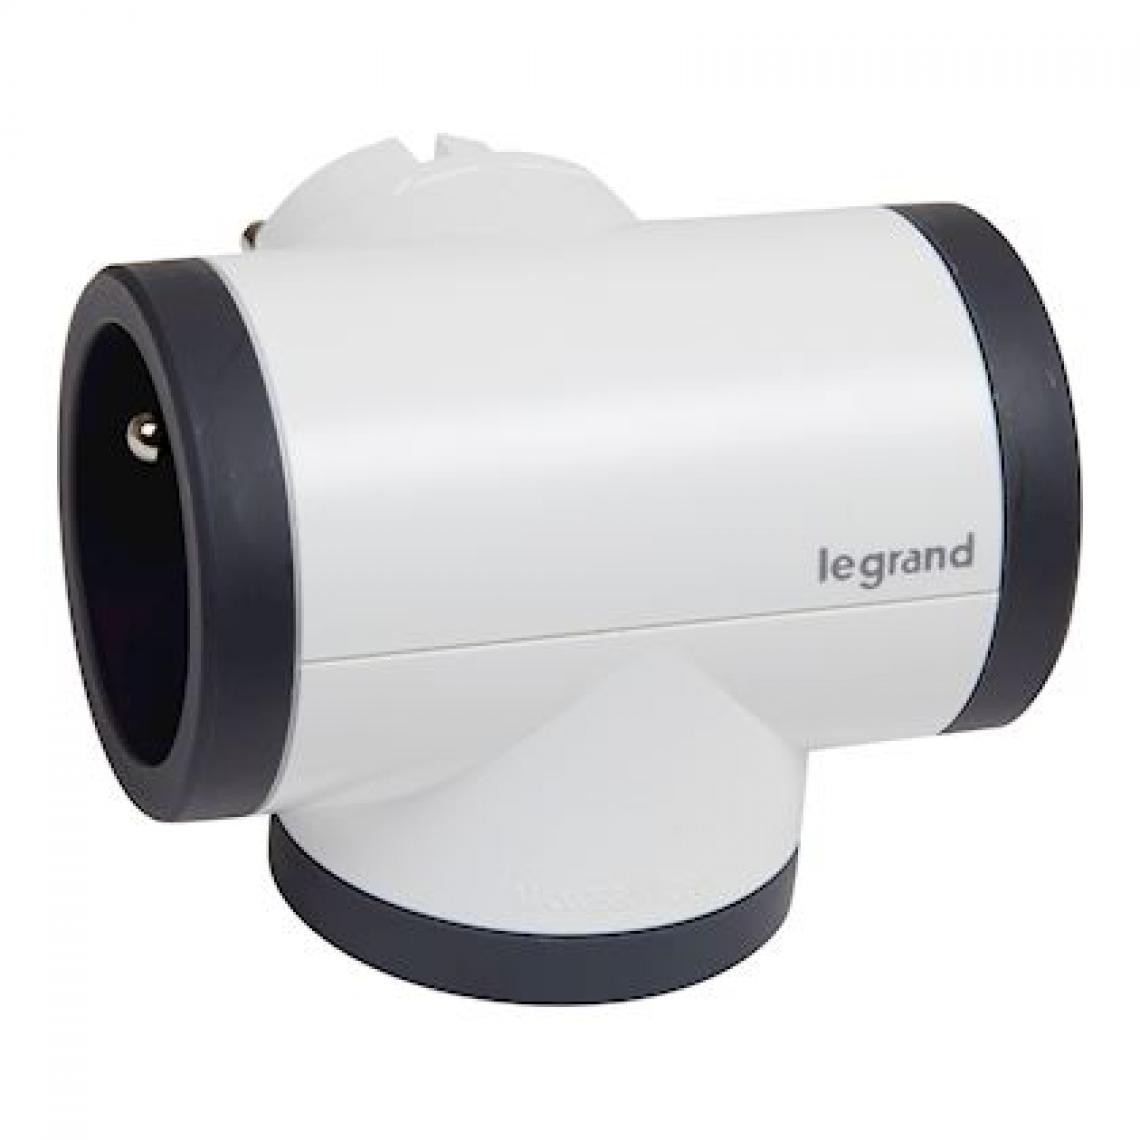 Legrand - fiche multprise - 3 x 2p+t - latérale - rotative - blanc / noir - legrand 049436 - Fiches électriques